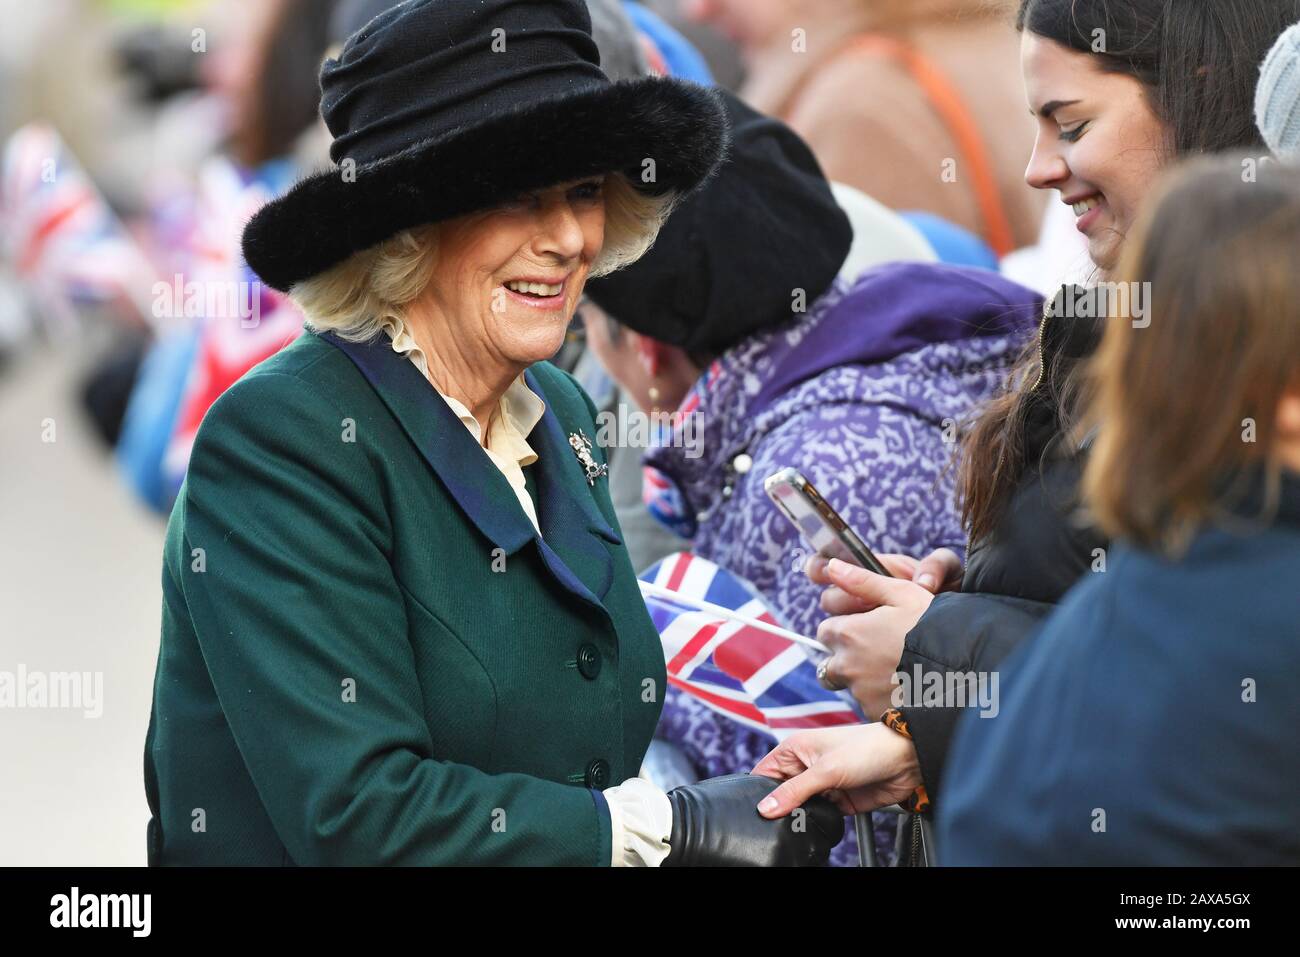 La duchessa di Cornovaglia incontra i membri del pubblico durante una visita al mercato di Leicester per il lancio della nuova piazza del mercato. Foto Stock